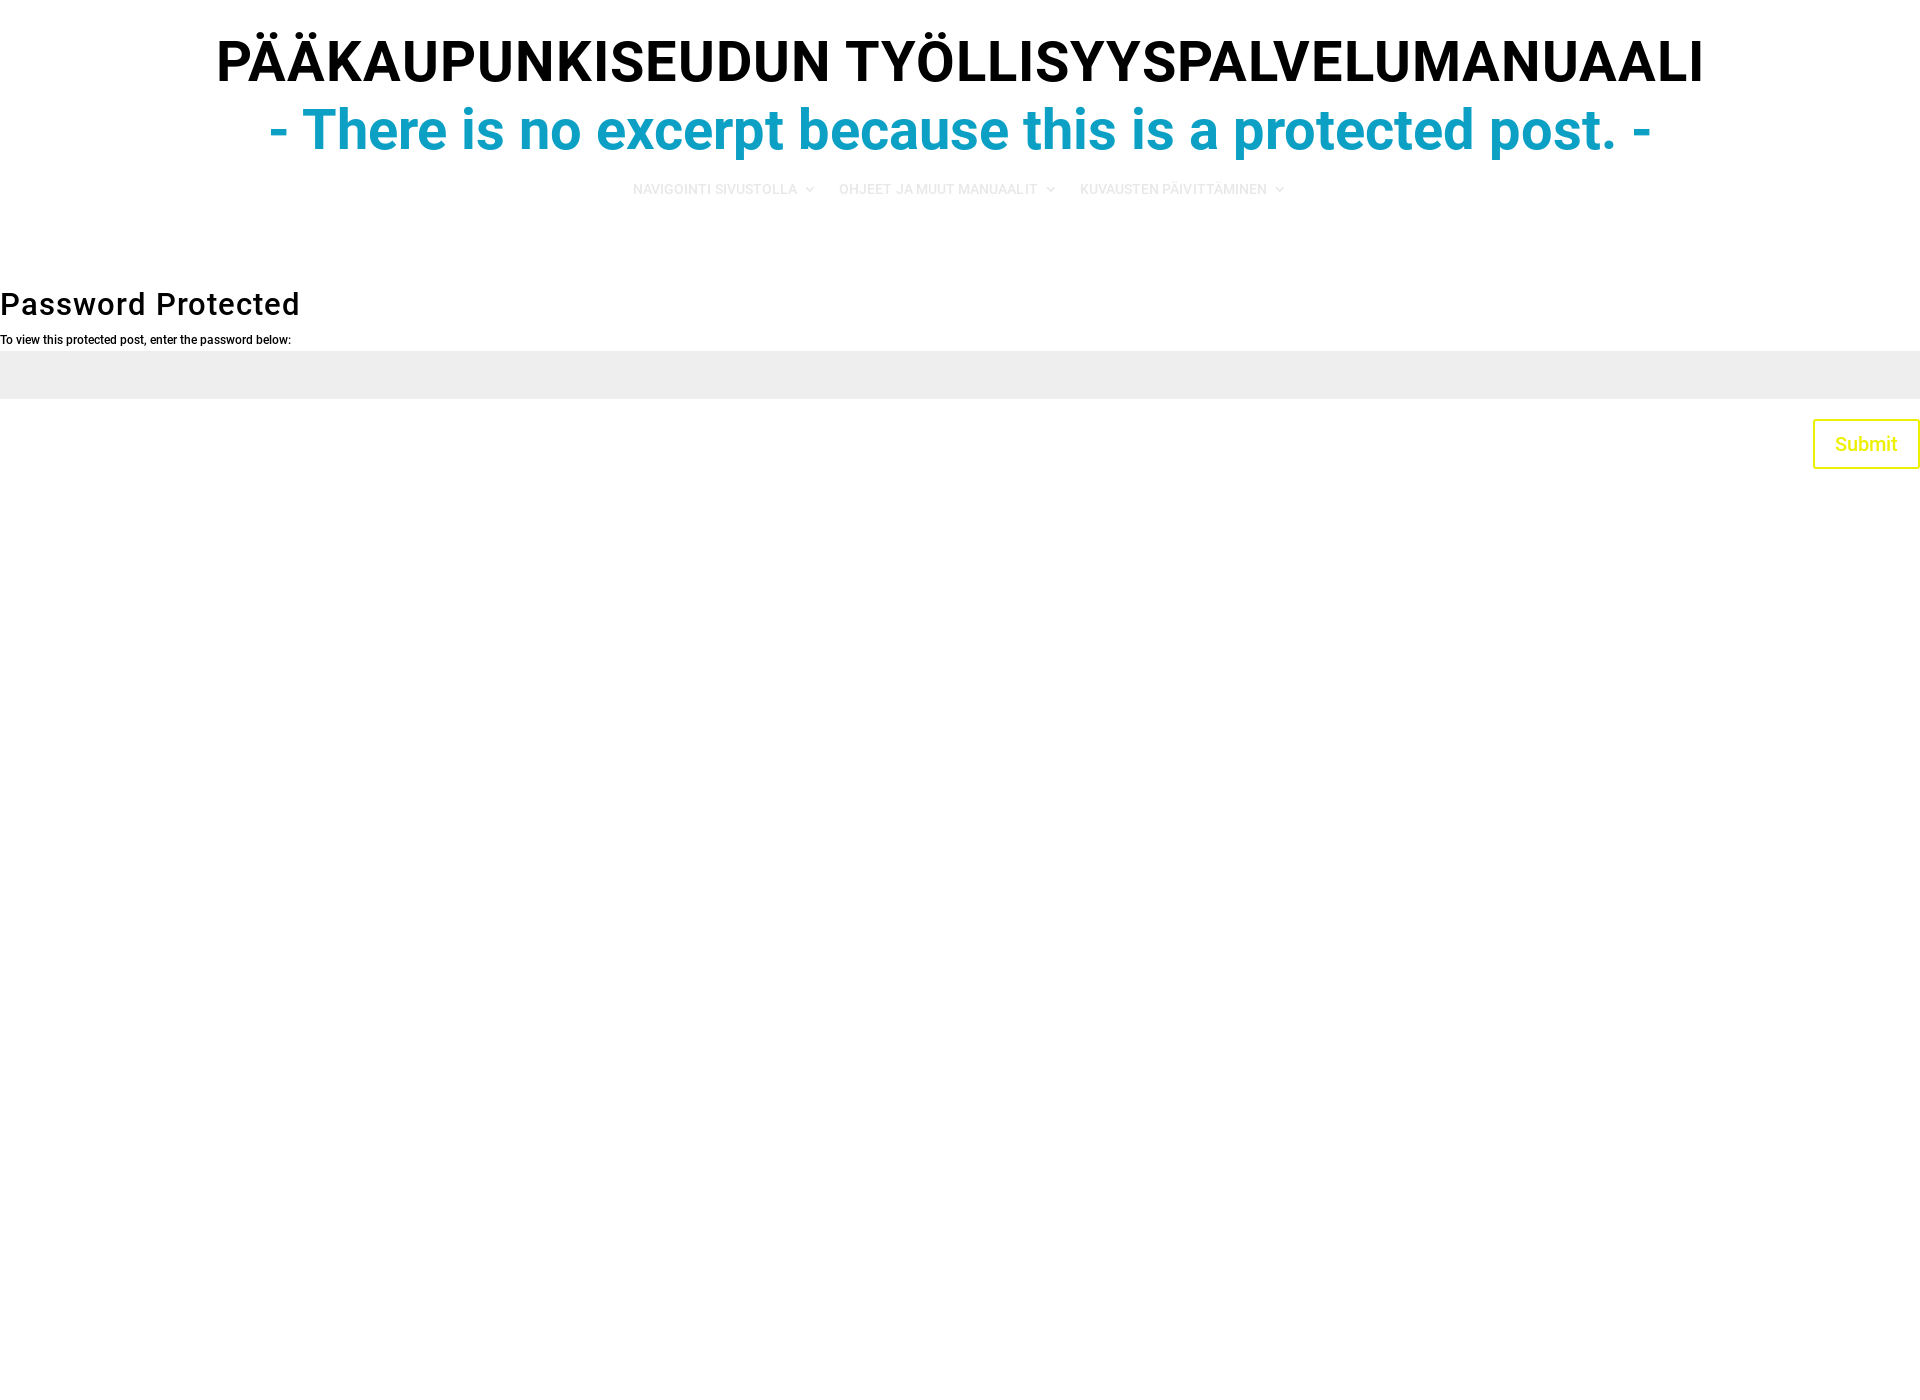 Skärmdump för palvelumanuaali.fi